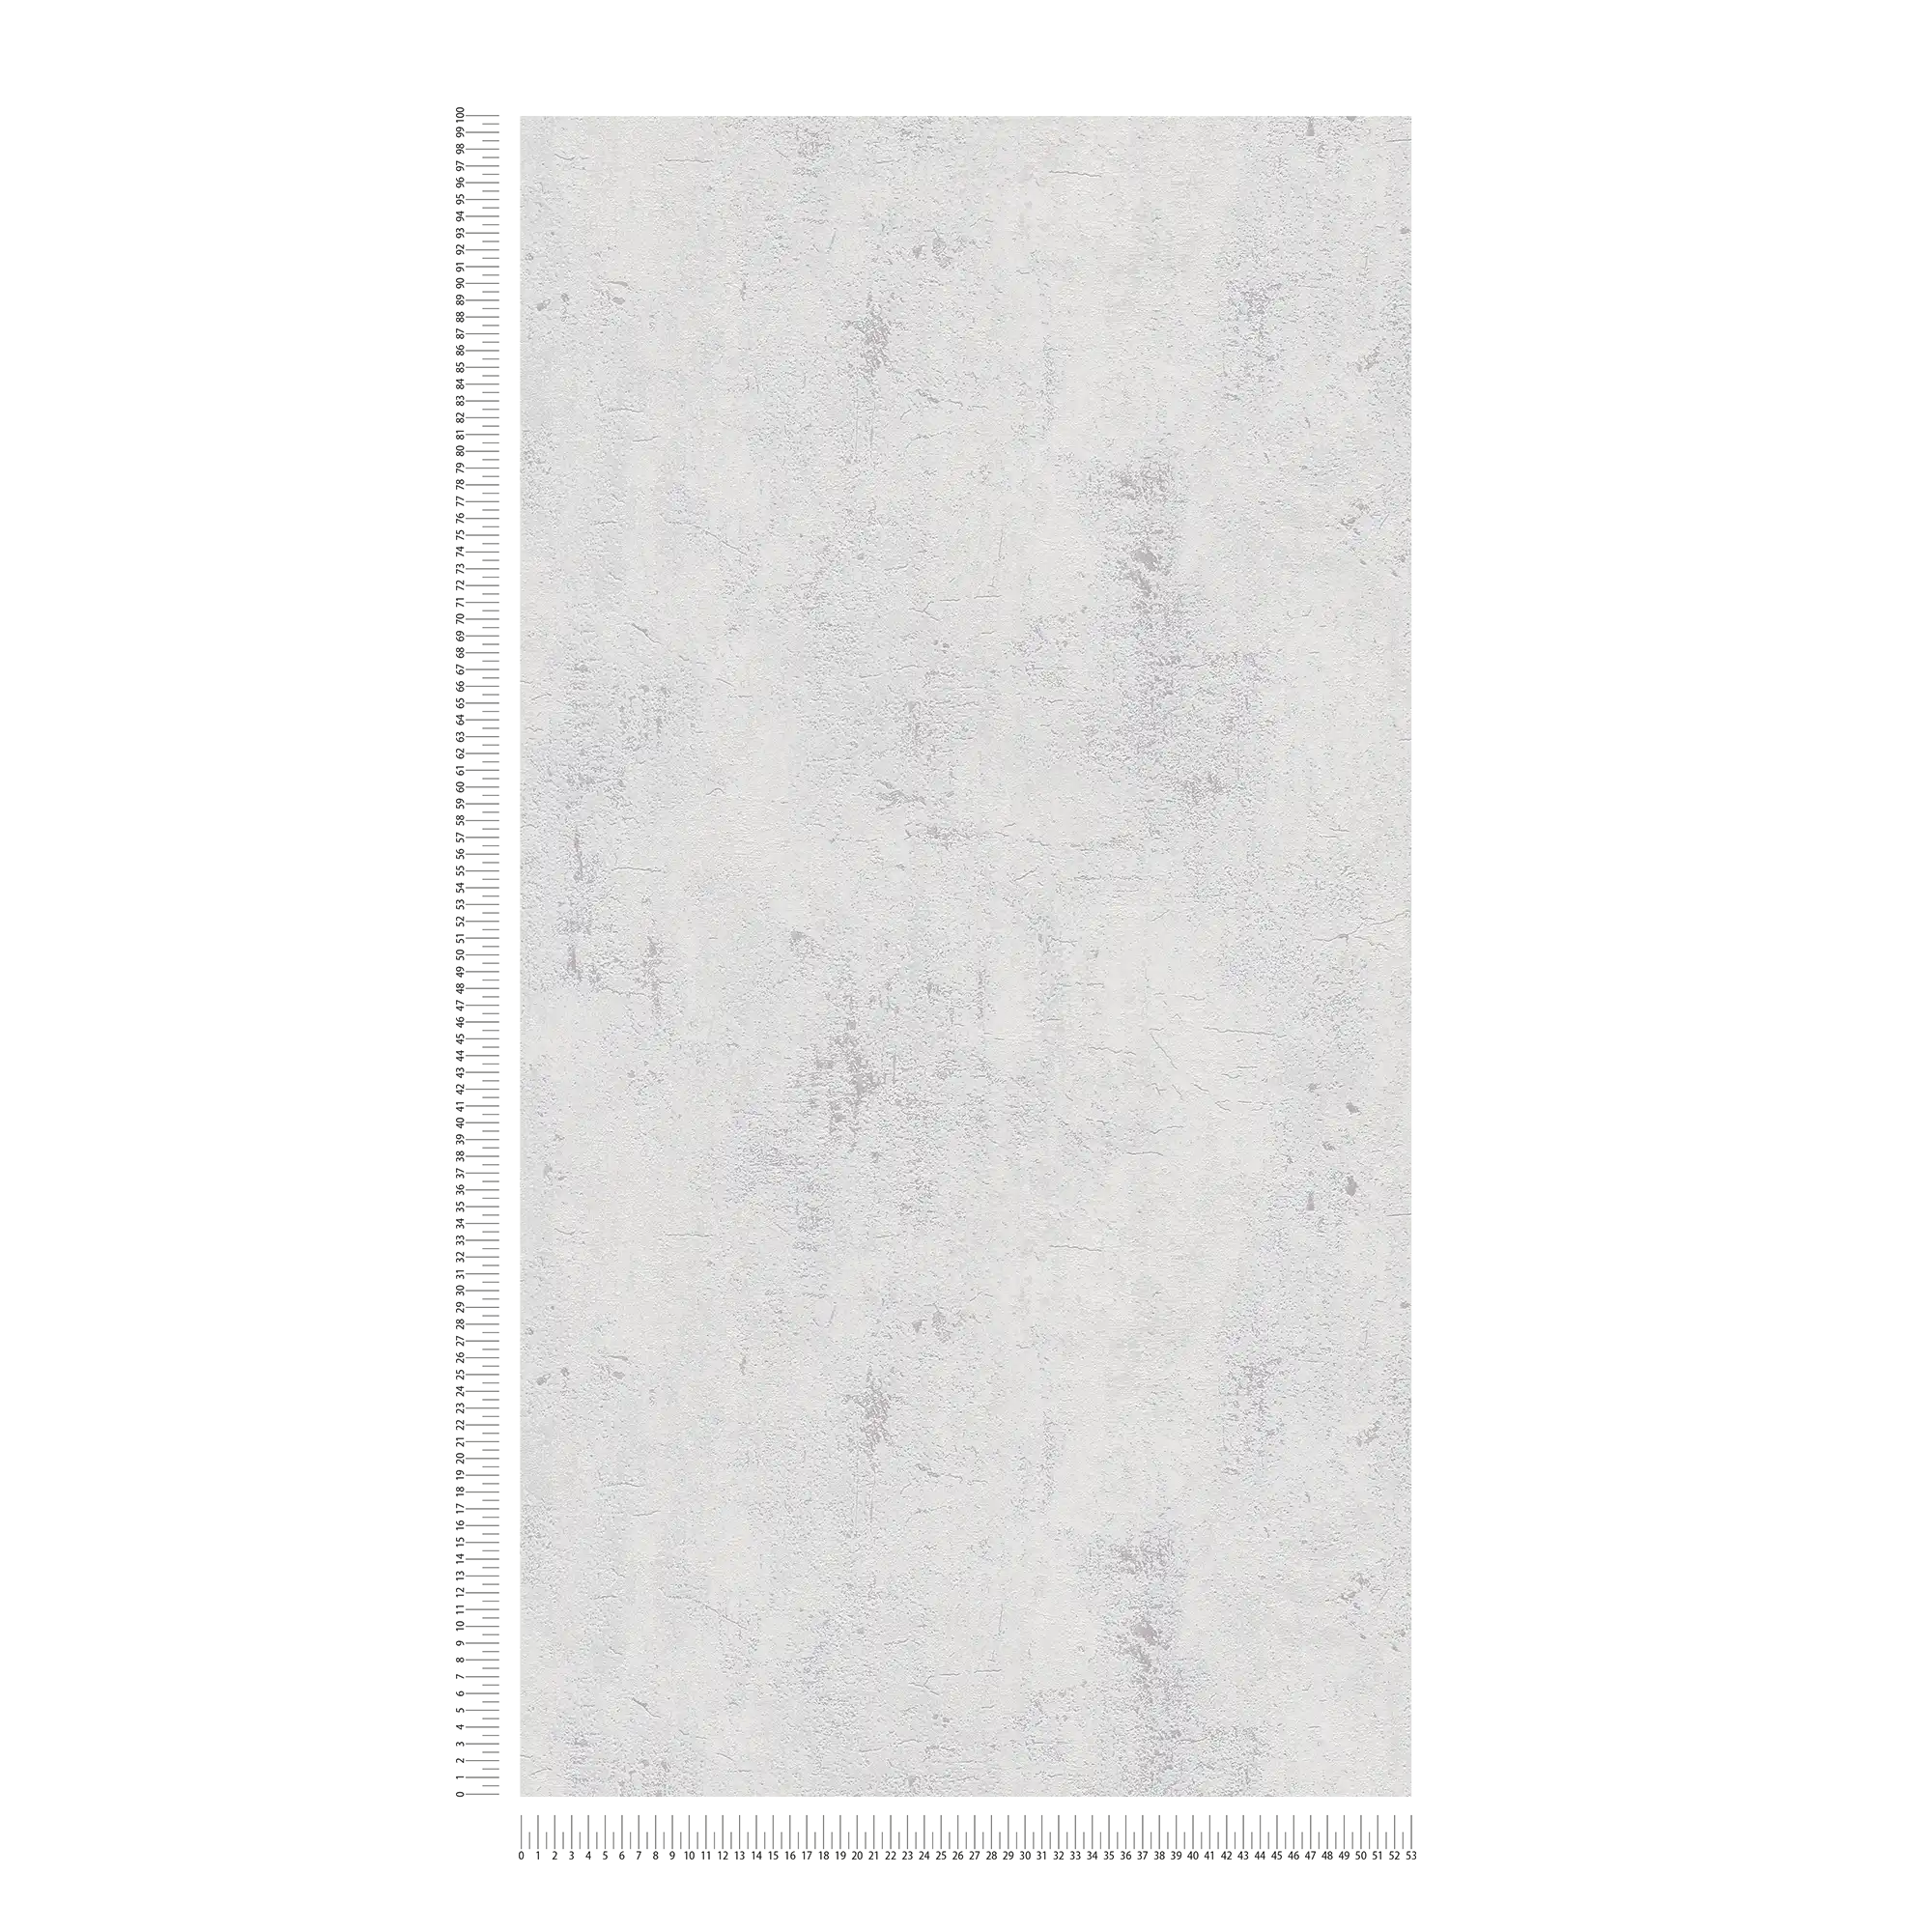             Neutrale Tapete mit Putzoptik im rustikalen Stil – Beige, Weiß
        